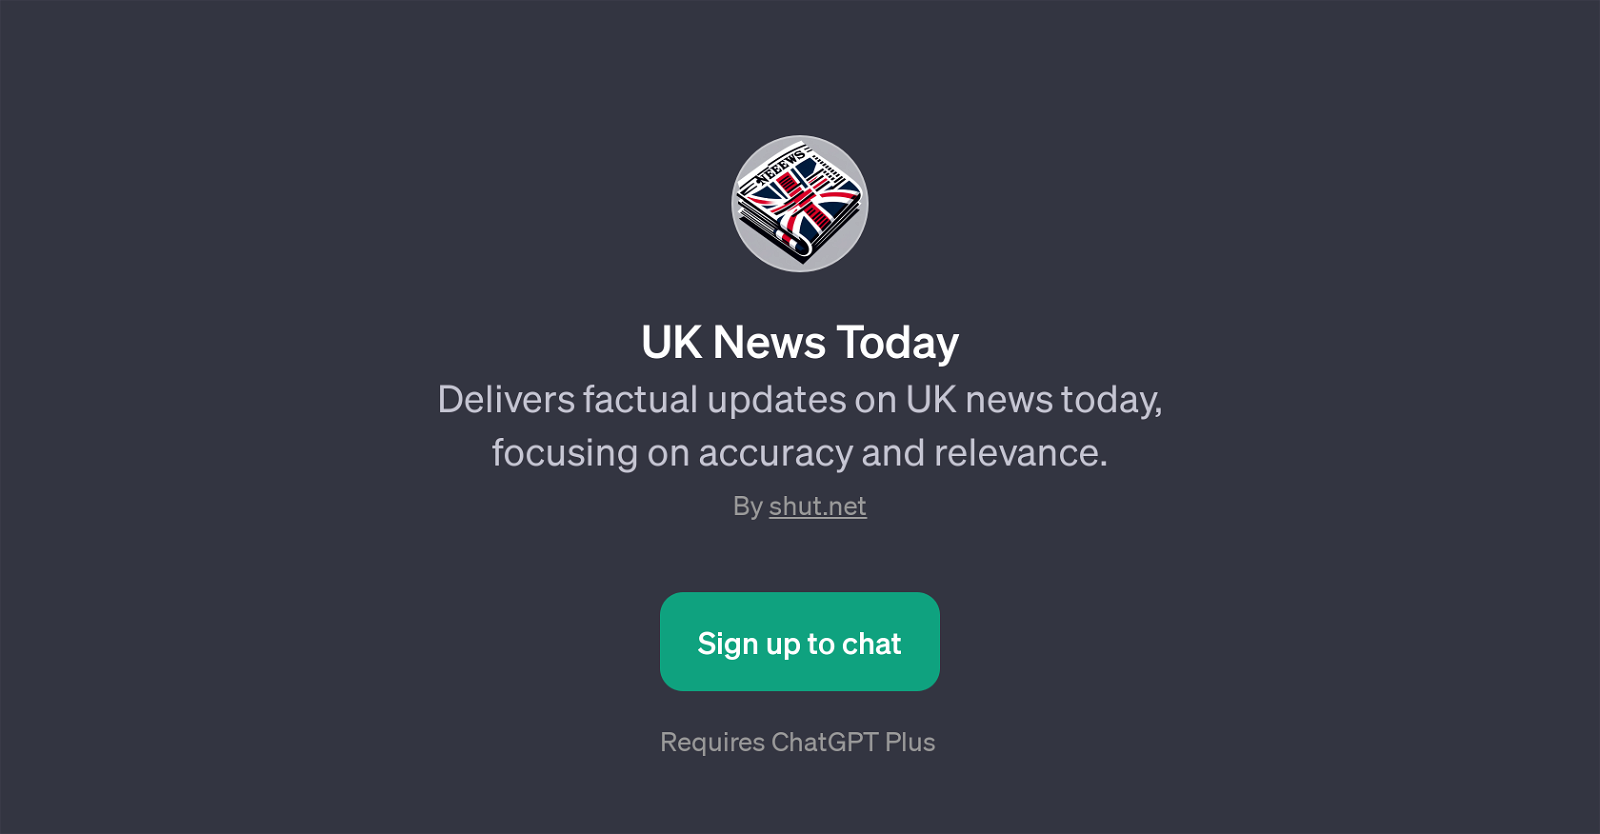 UK News Today website